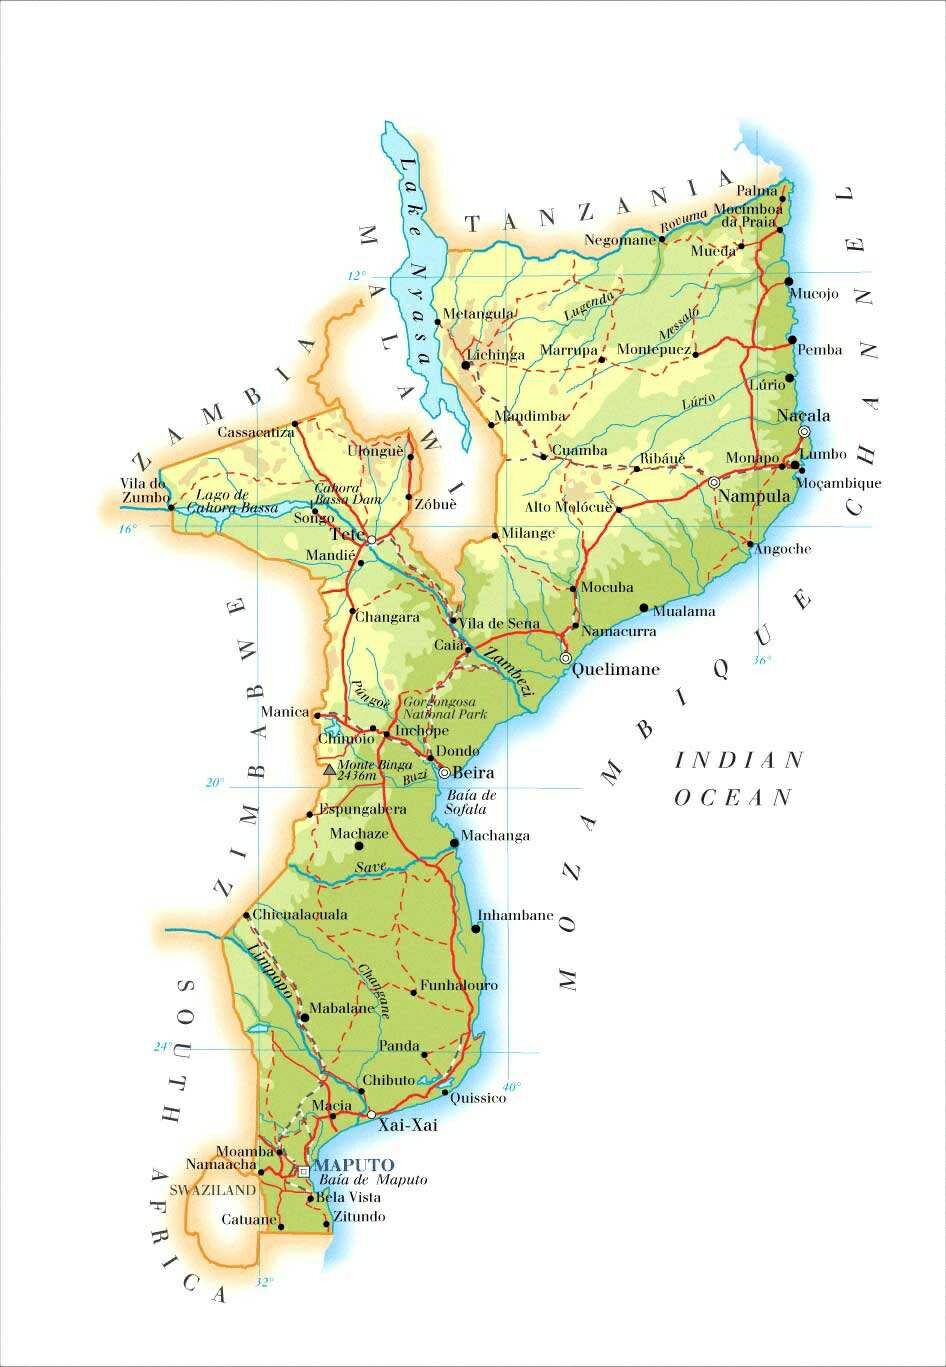 索马里地理位置地图图片